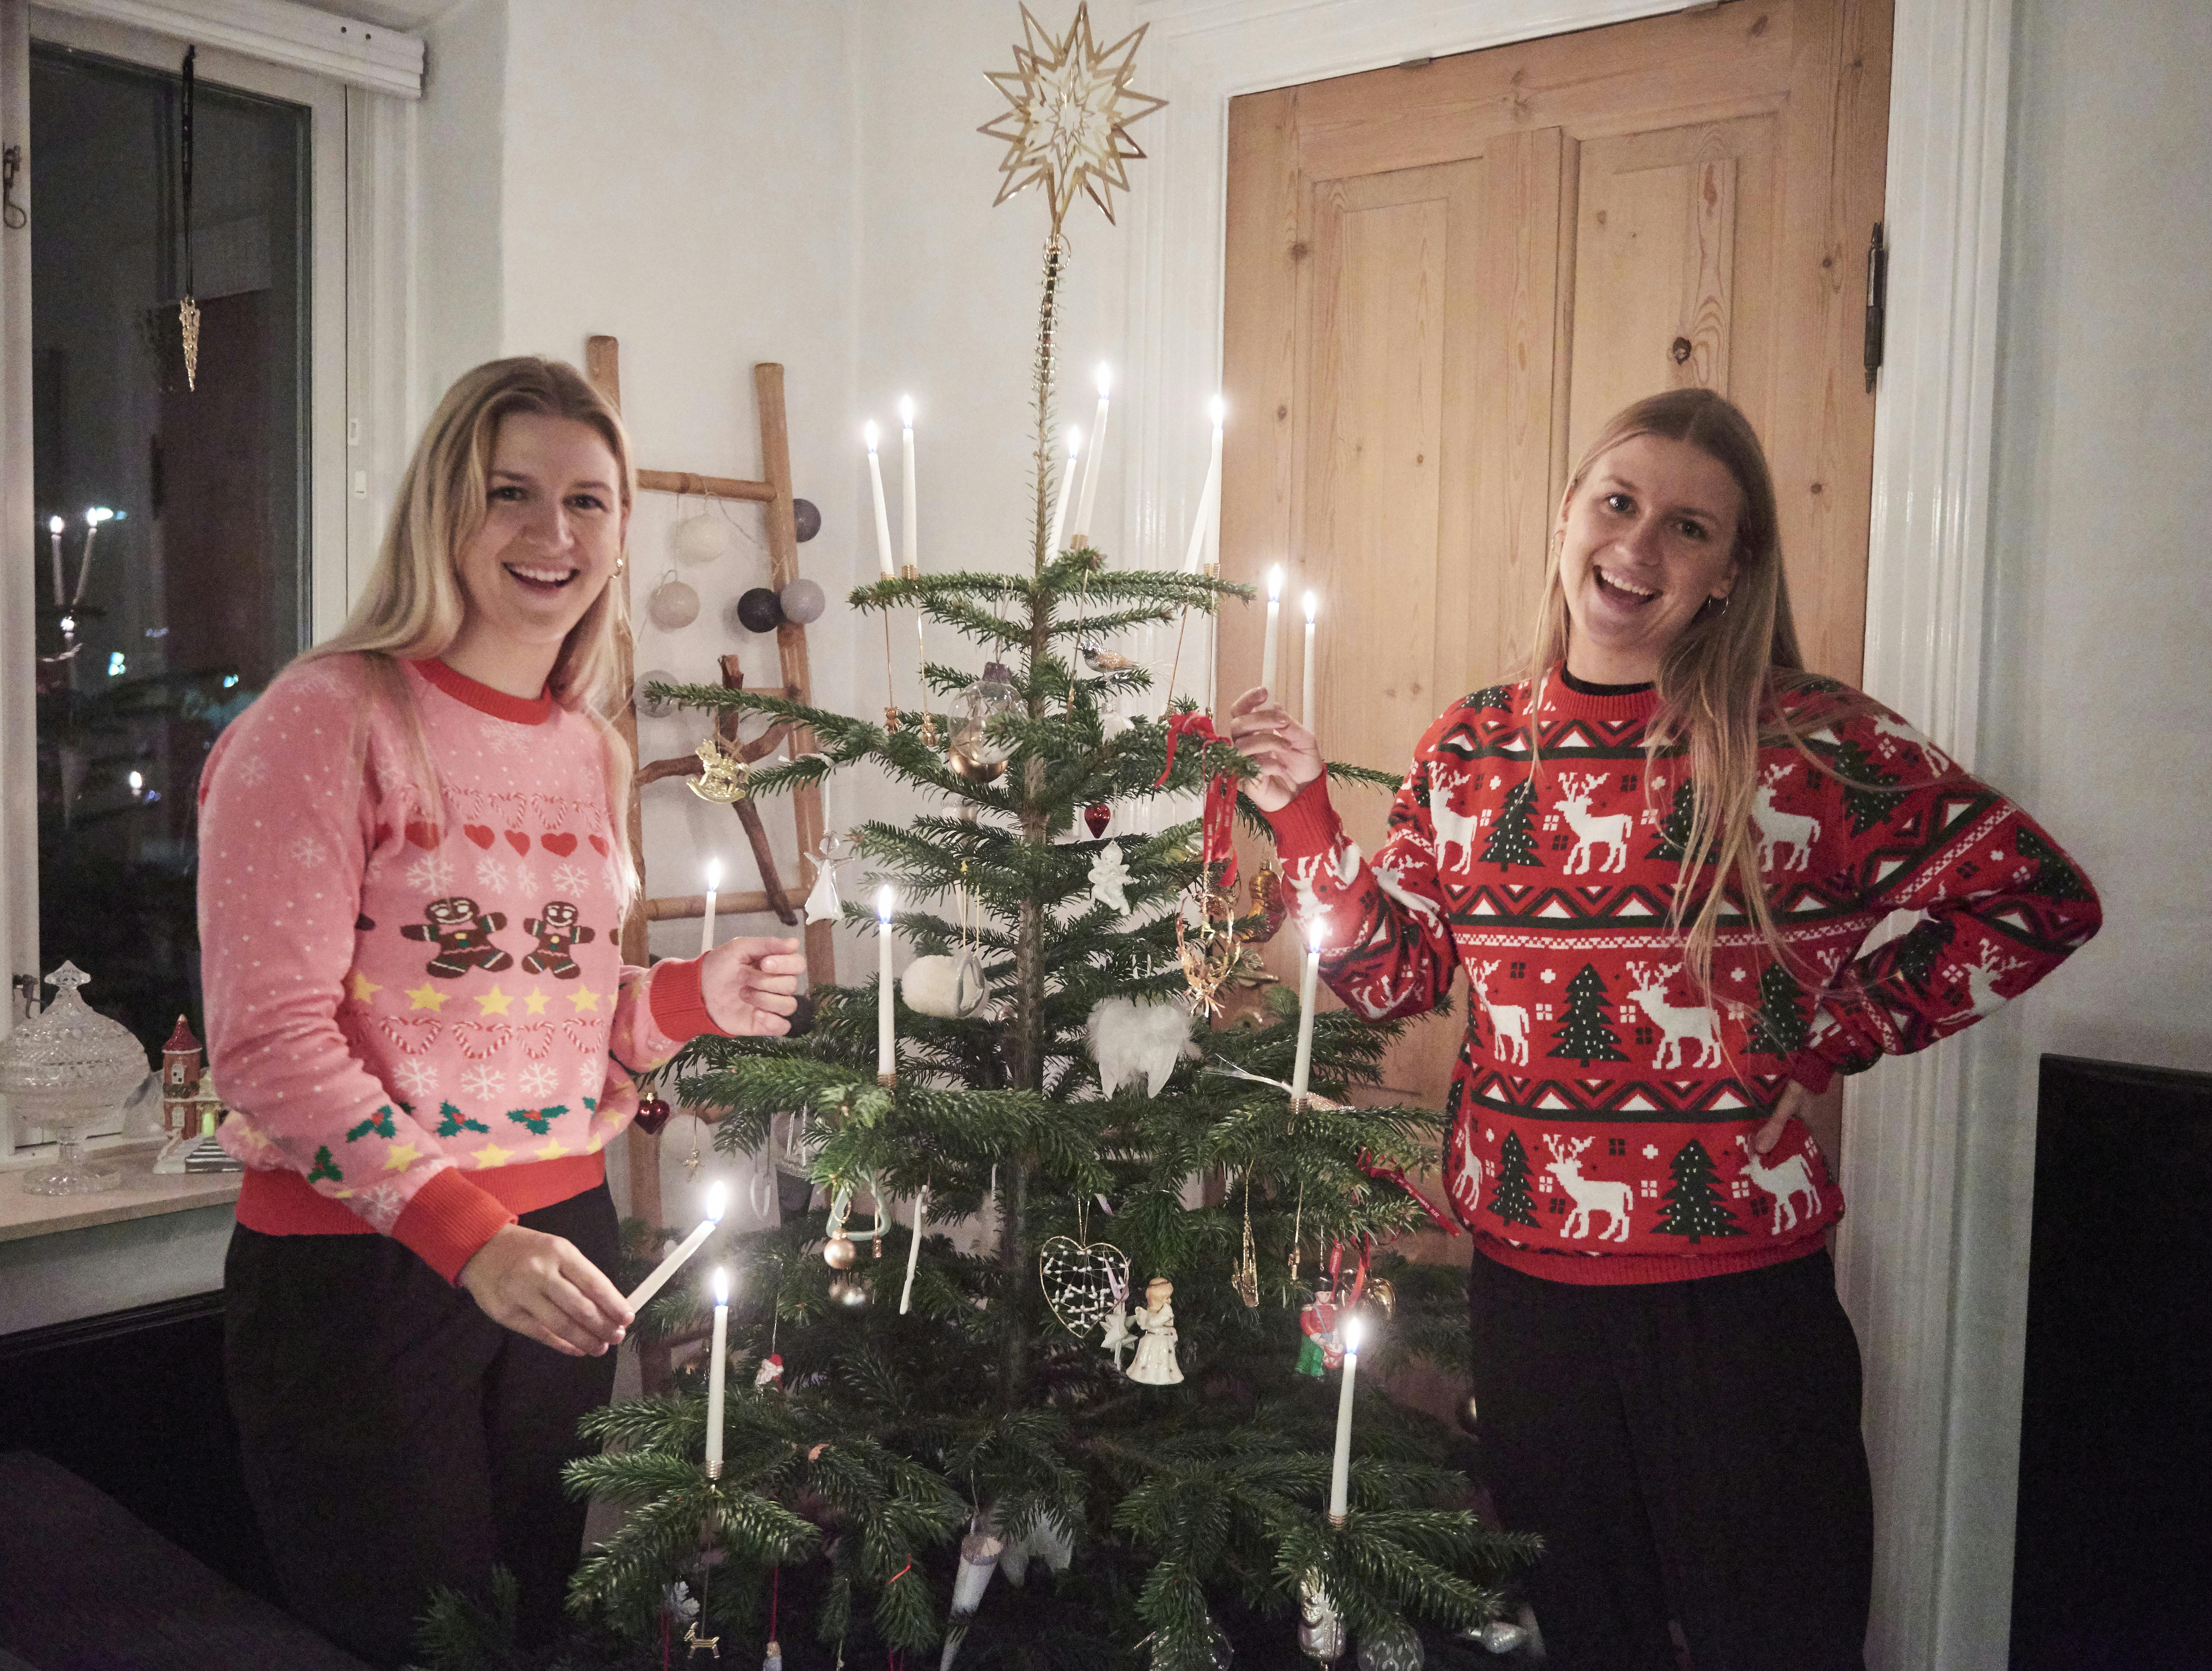 Juletraditionerne må ikke dø ud, siger tvillingerne Anne-Cathrine og Marie-Louise Brandenborg.